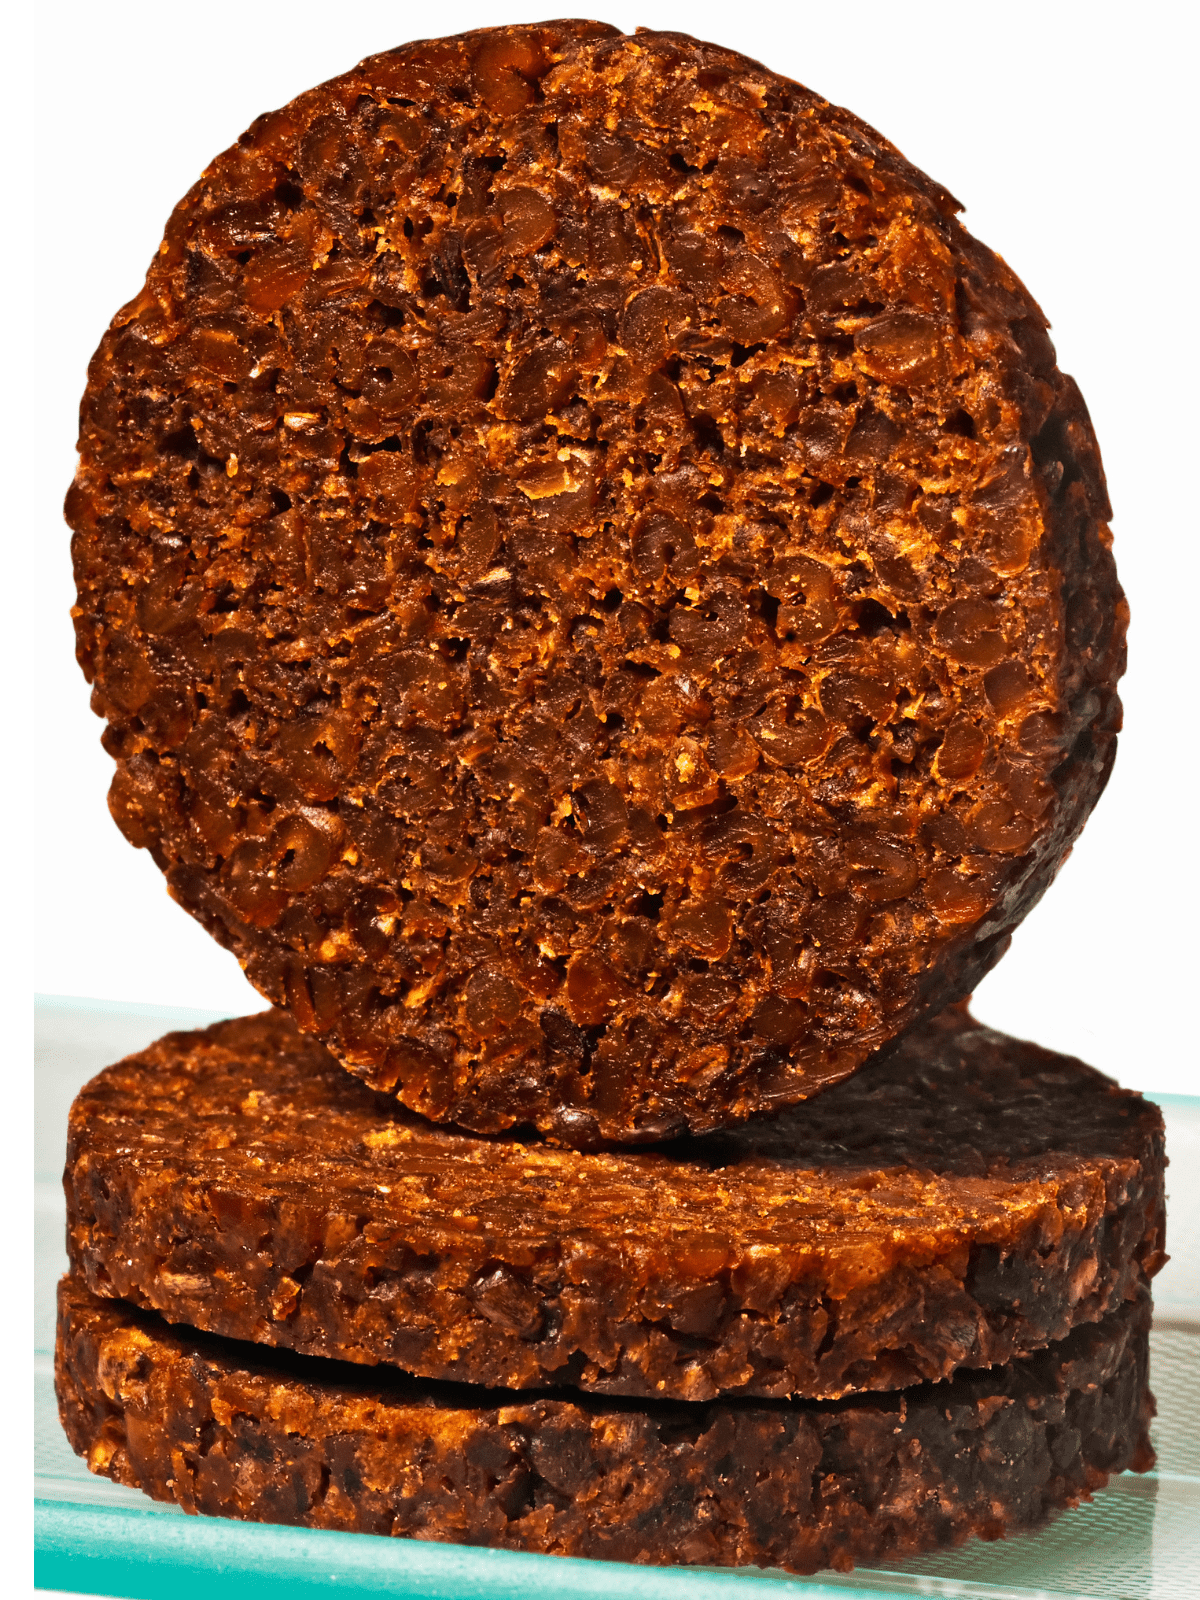 Sliced pumpernickel brown bread.